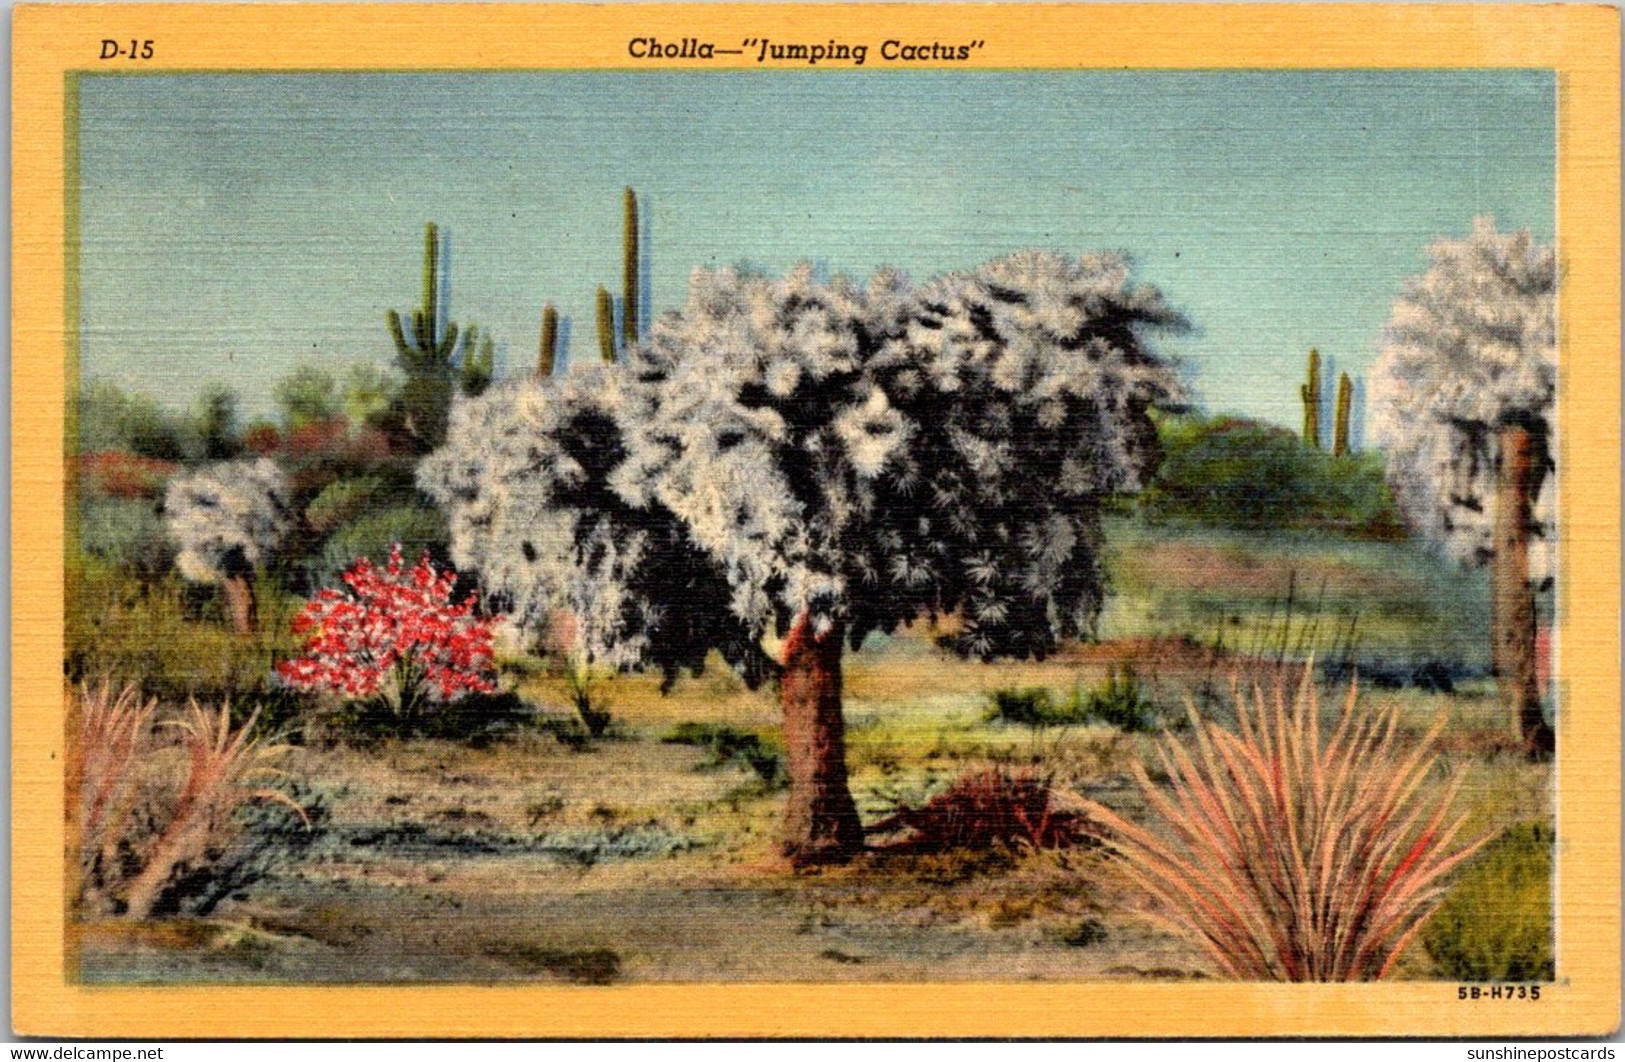 Cactus Cholla Cactus "Jumping Cactus" Curteich - Cactus